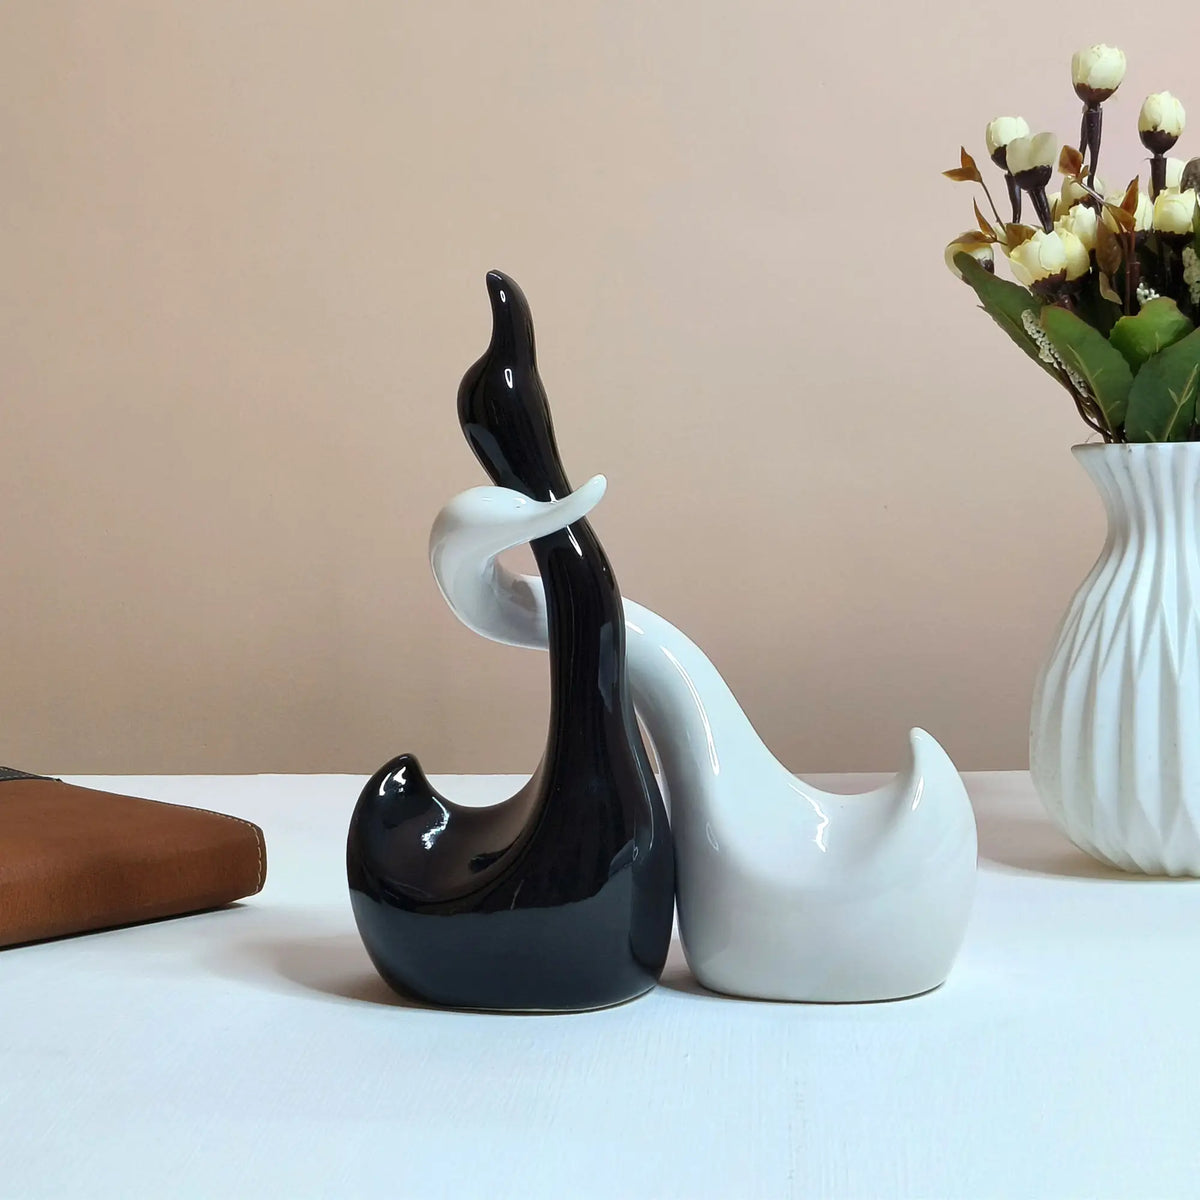 Swan Hugging Ceramic Figurine Decor Item